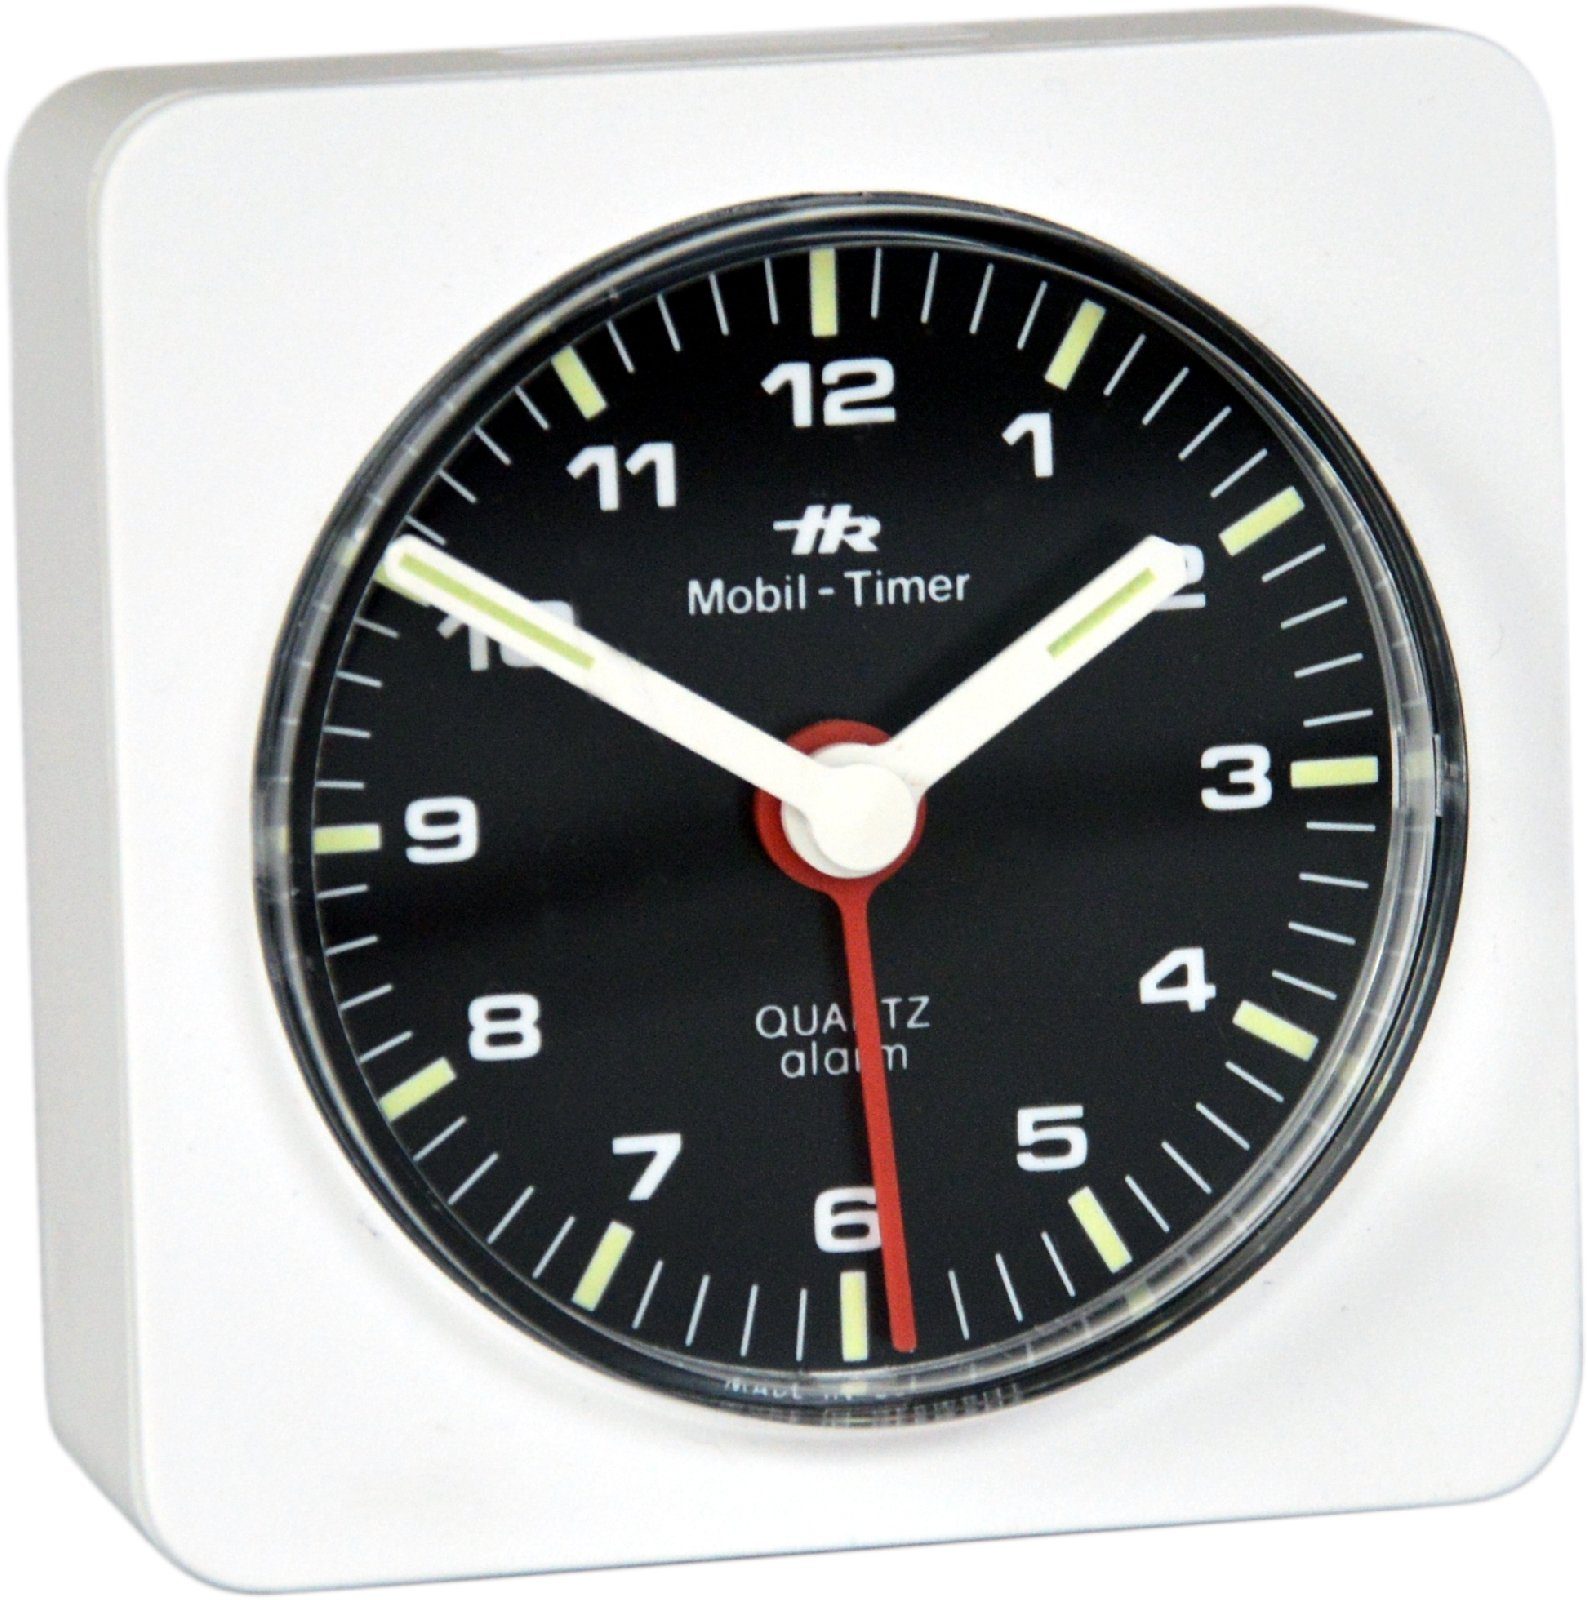 HR Autocomfort Reisewecker Mini Wecker original historisch 1980 analoger Reisewecker Uhr